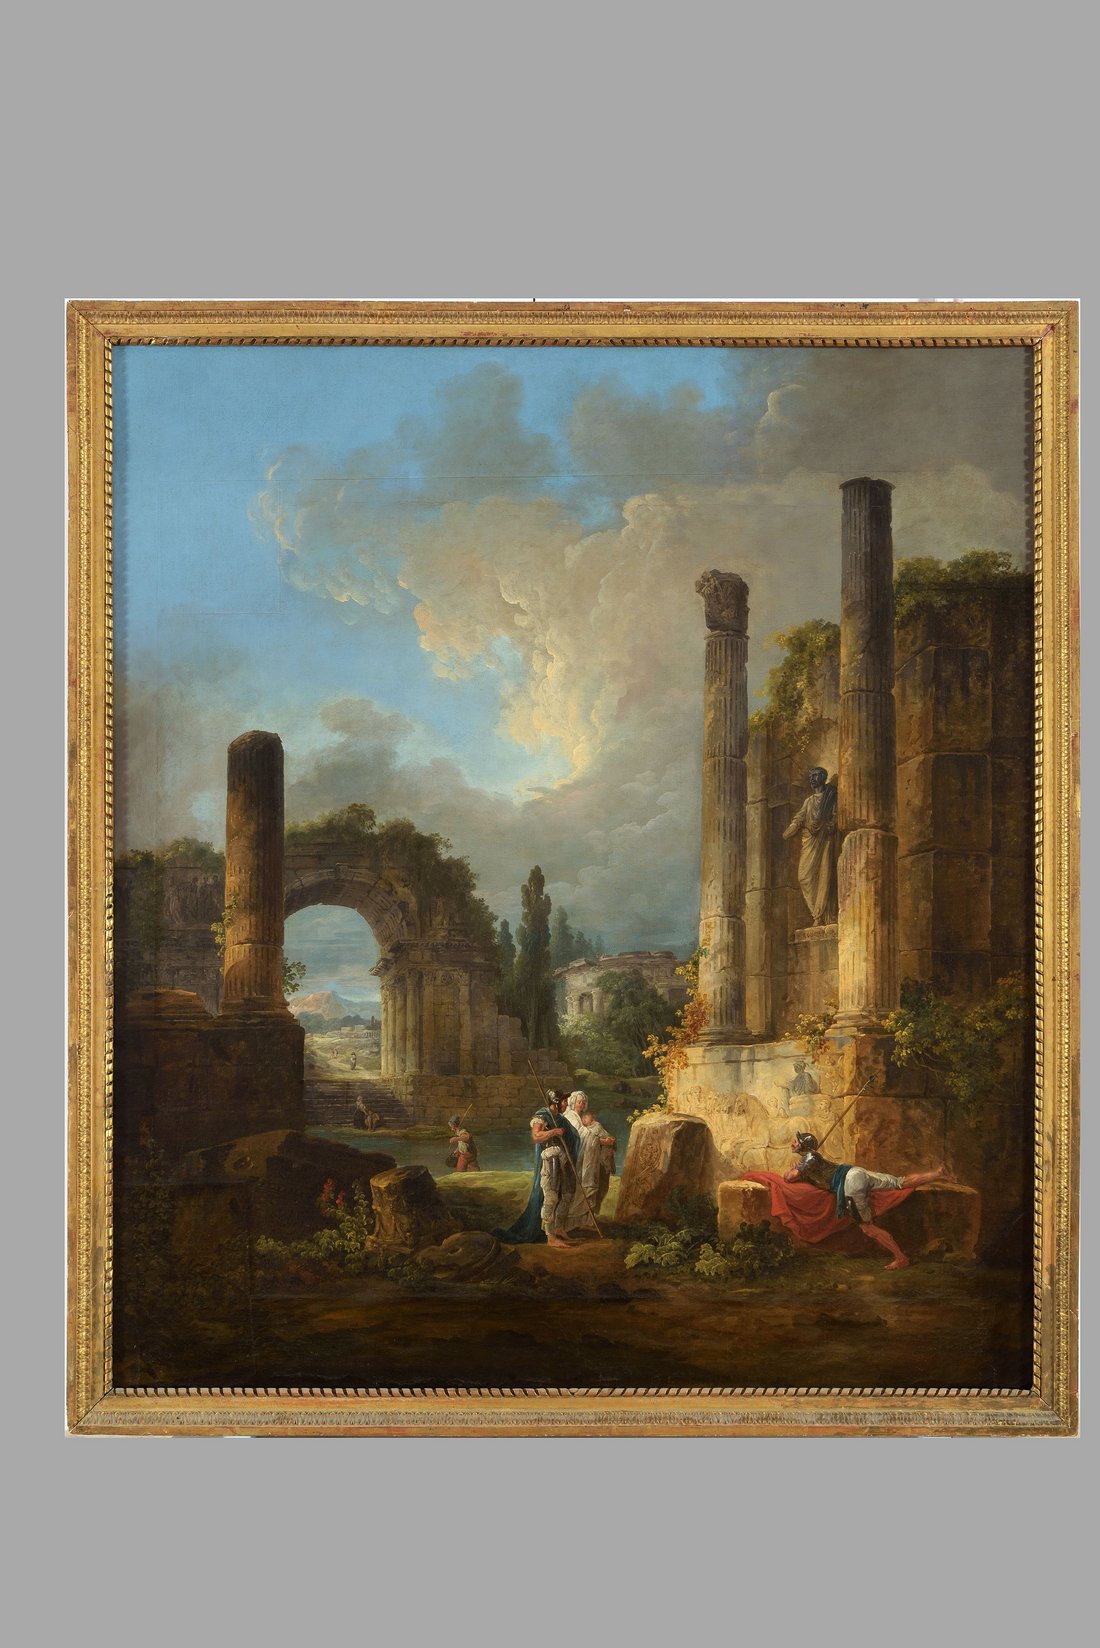 Hubert Robert, Ruines d'un temple, huile sur toile, 1,54 x 1,38 m, MNR 112. Source : Base POP.